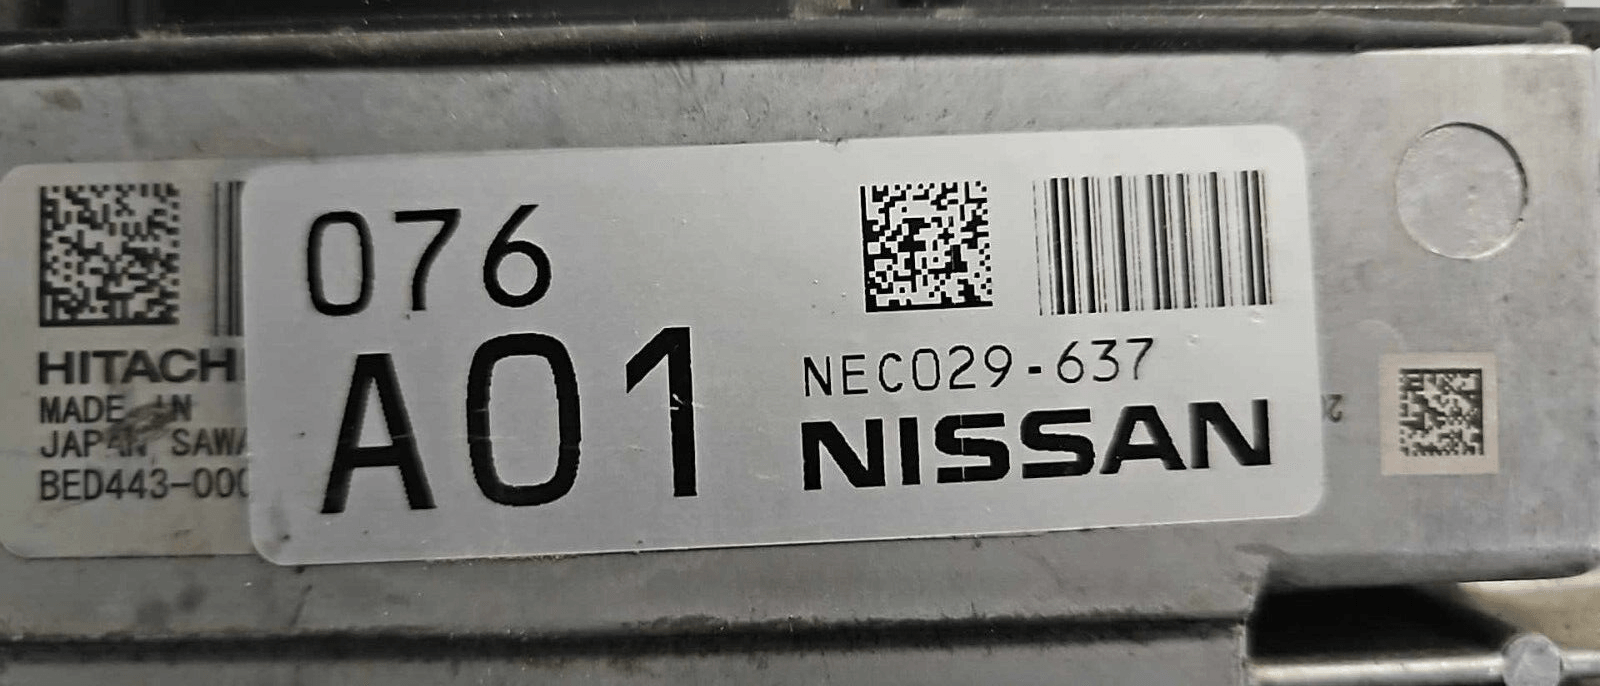 NEC029-637 Nissan Armada 2018-2020 ecm ecu computer - Swan Auto